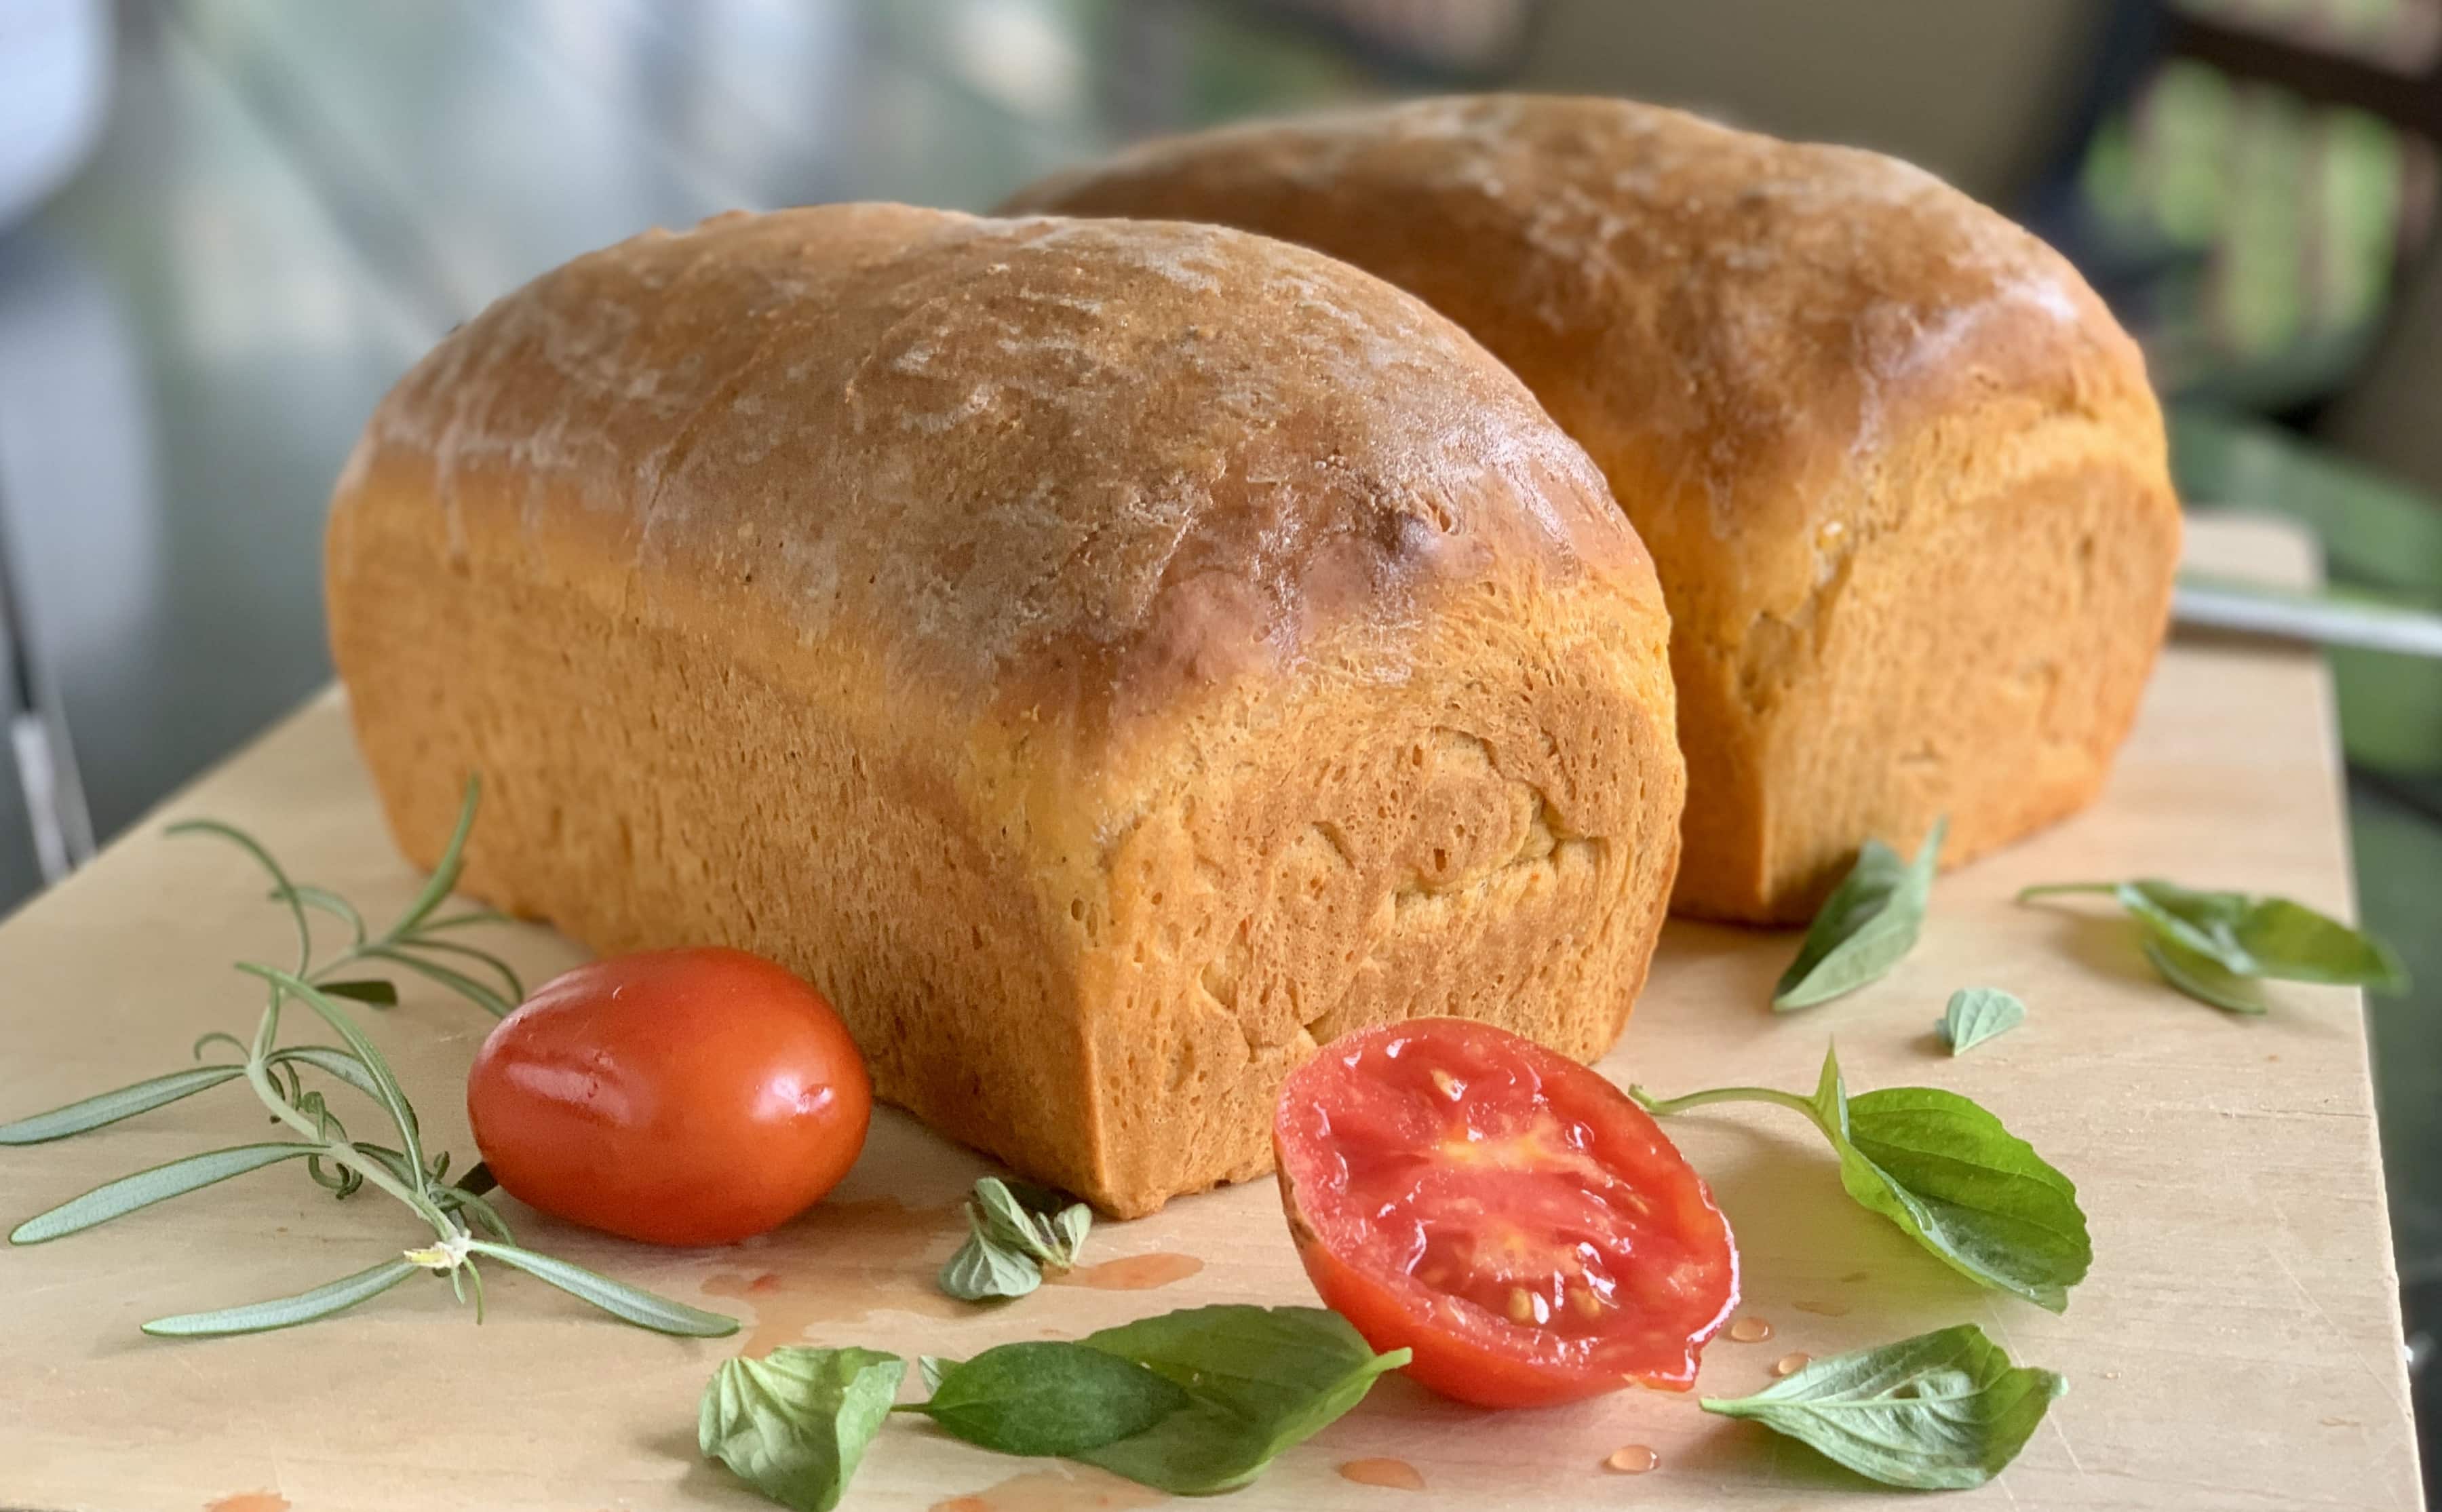 Tomato Basil Bread